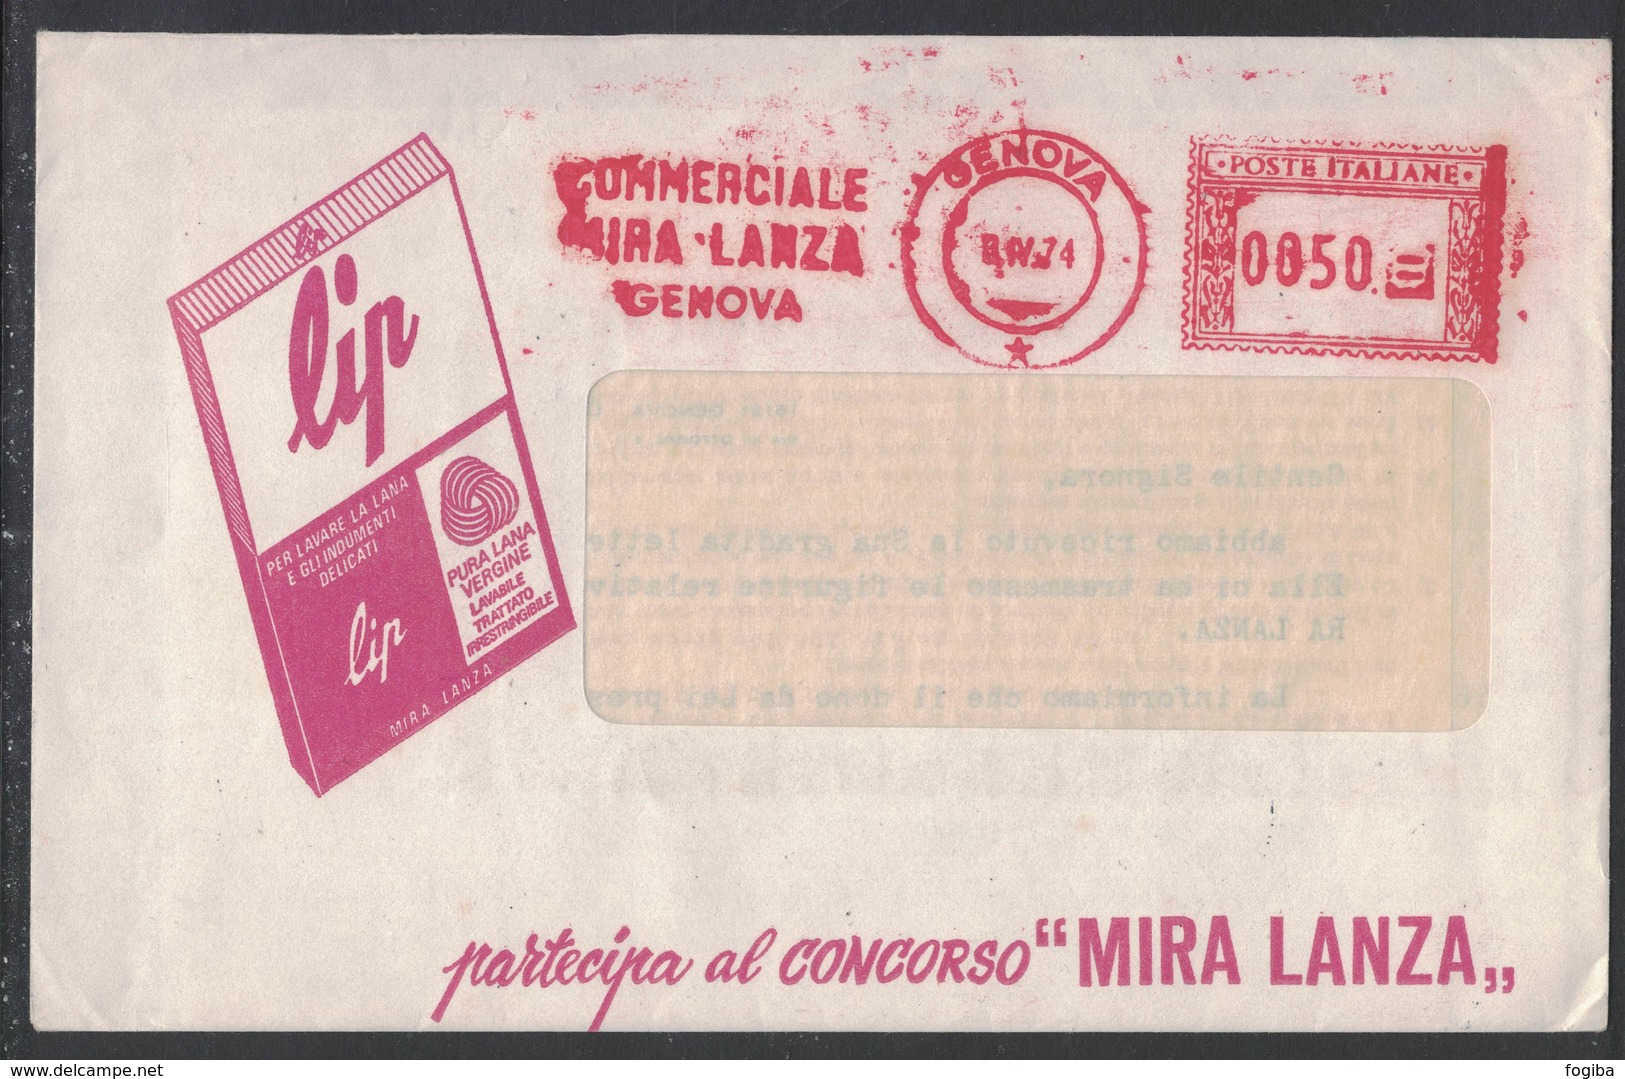 AP29   Italia,Italy Red Meter / Freistempel / Ema 1974 Commerciale Mira Lanza Genova - Macchine Per Obliterare (EMA)